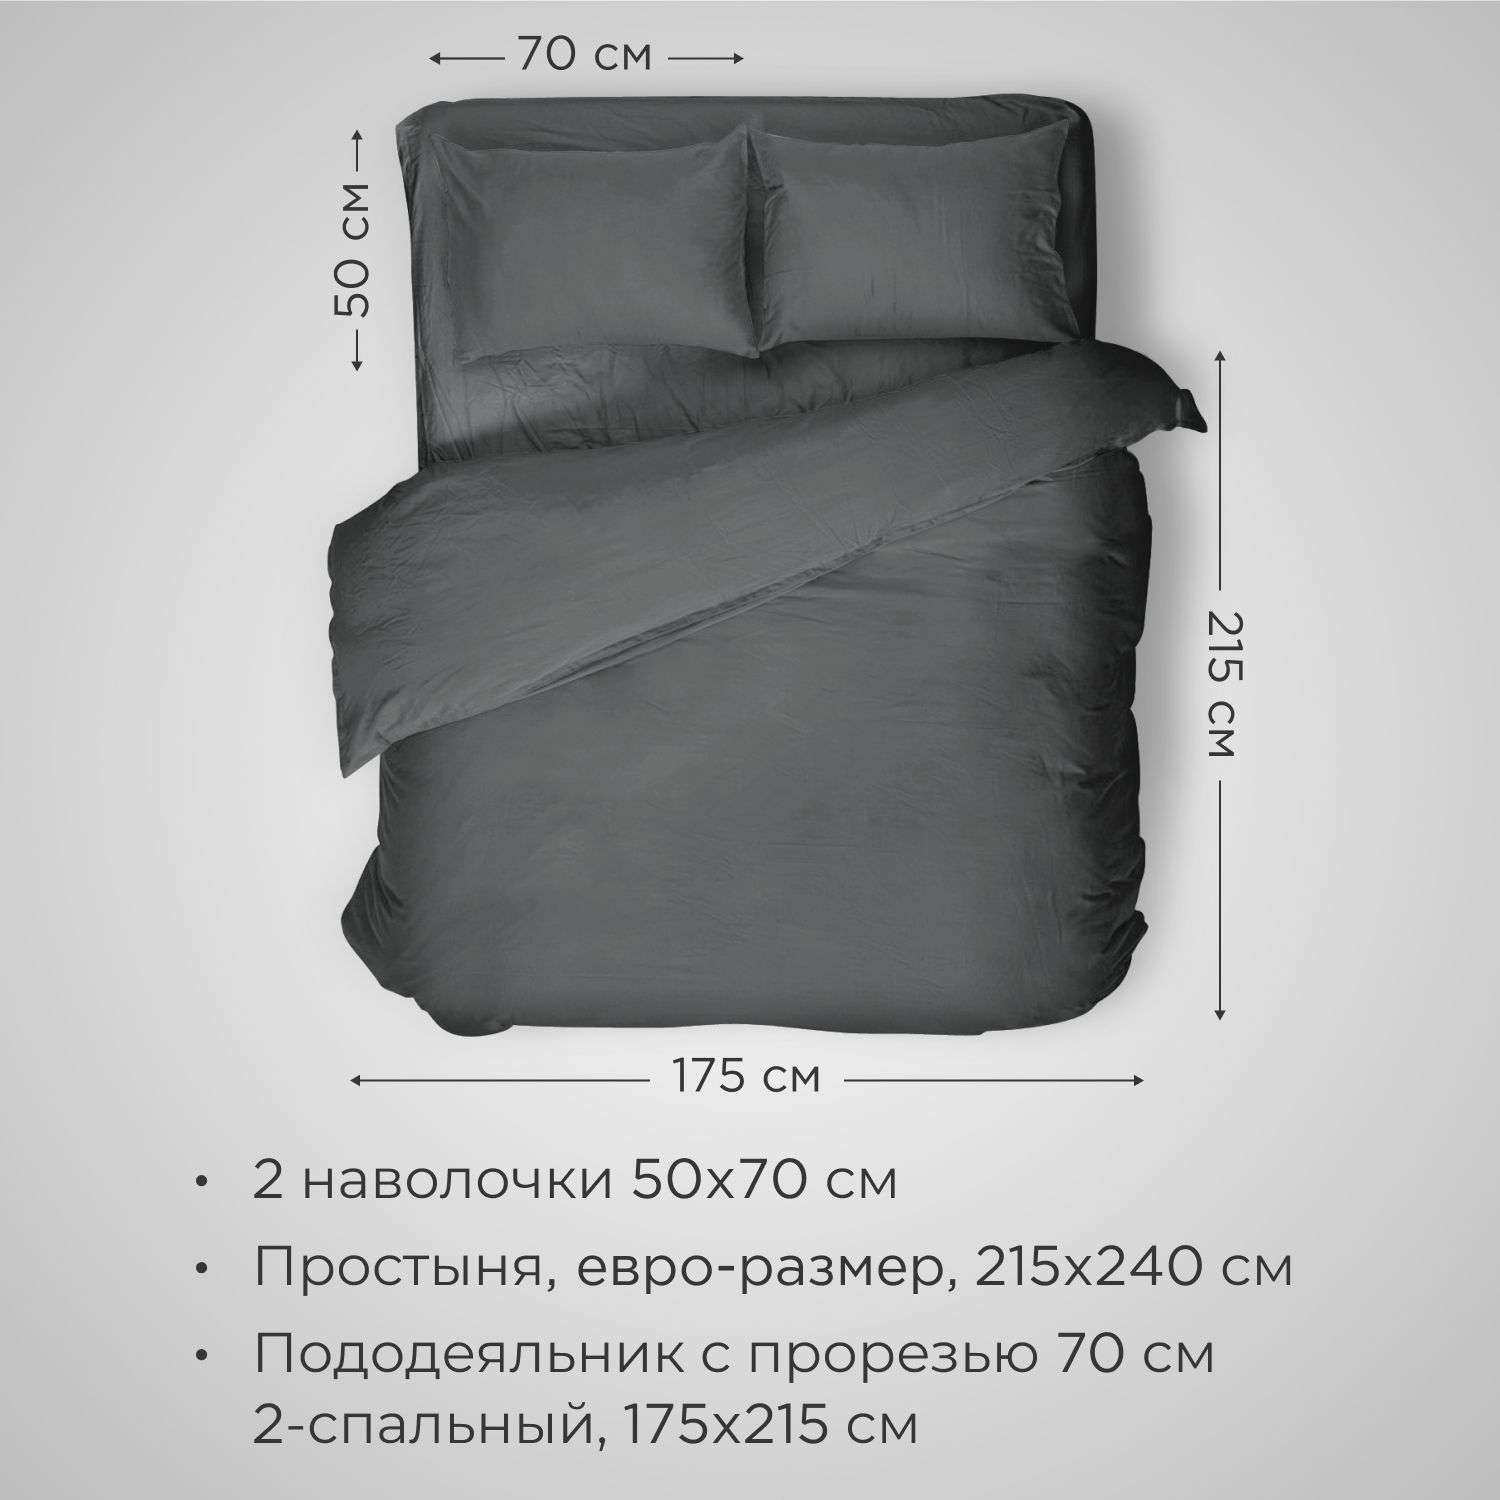 Комплект постельного белья SONNO URBAN FLOWERS 2-спальный цвет Матовый графит - фото 2